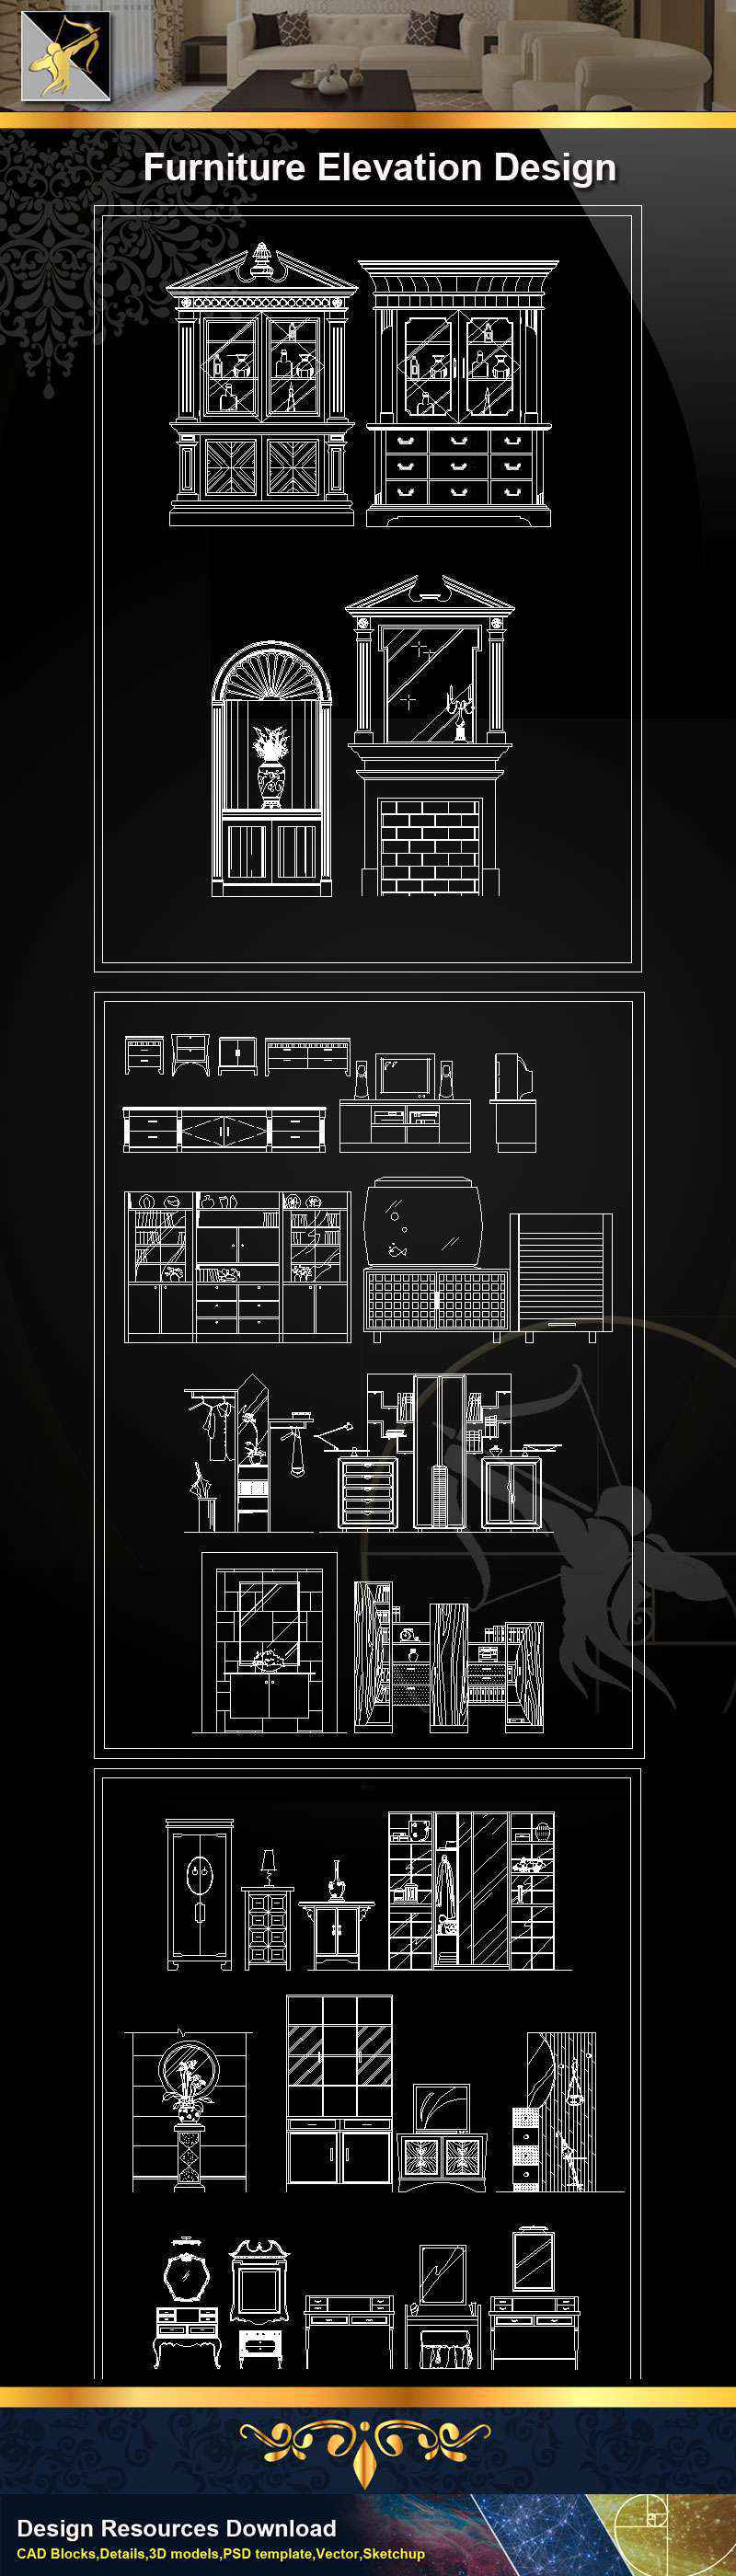 ★【Furniture Elevation Design】@Autocad Blocks,Drawings,CAD Details,Elevation